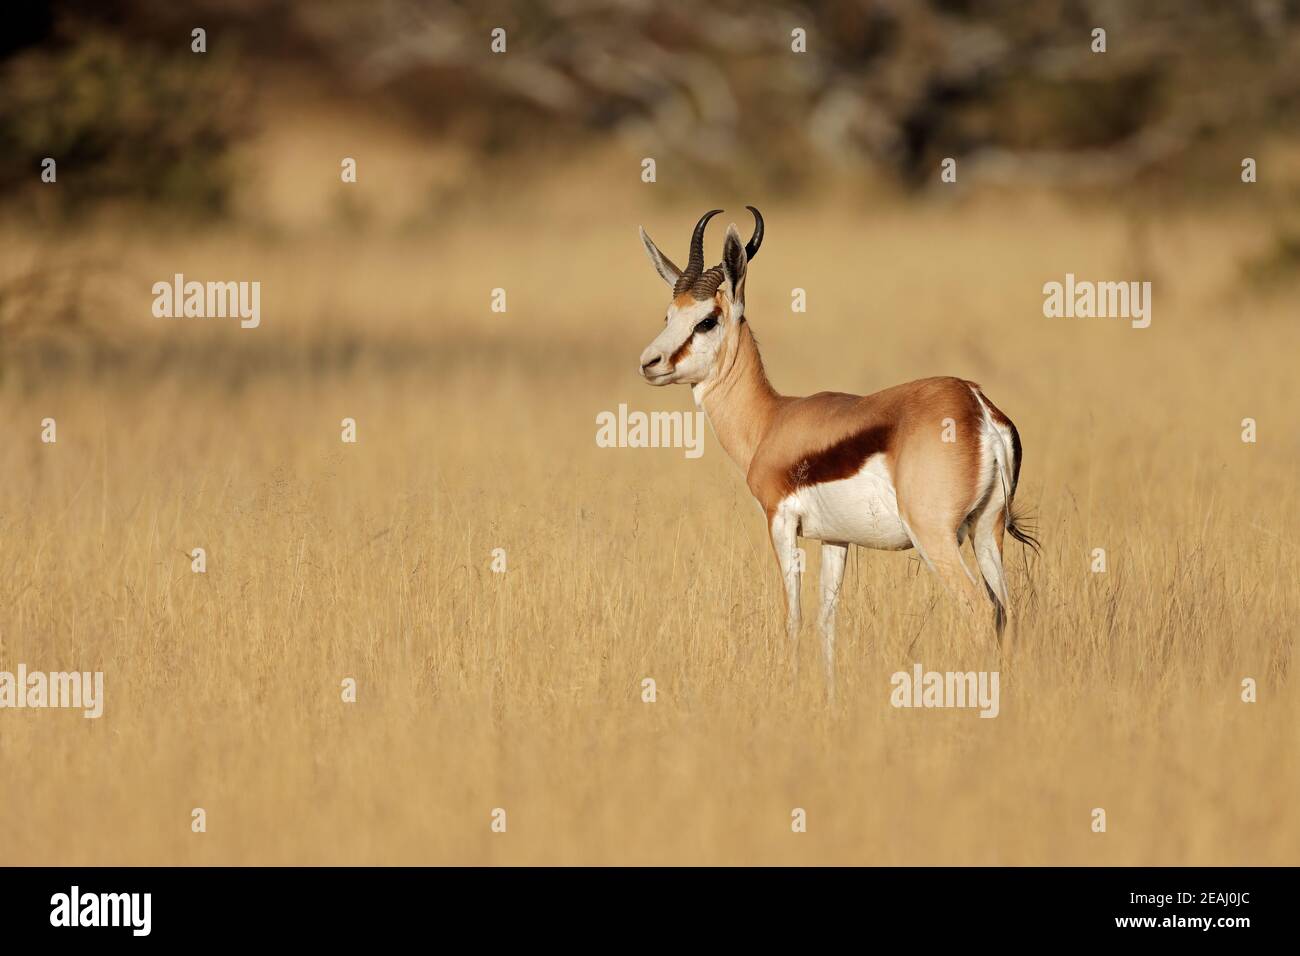 Springbok antelope in grassland Stock Photo